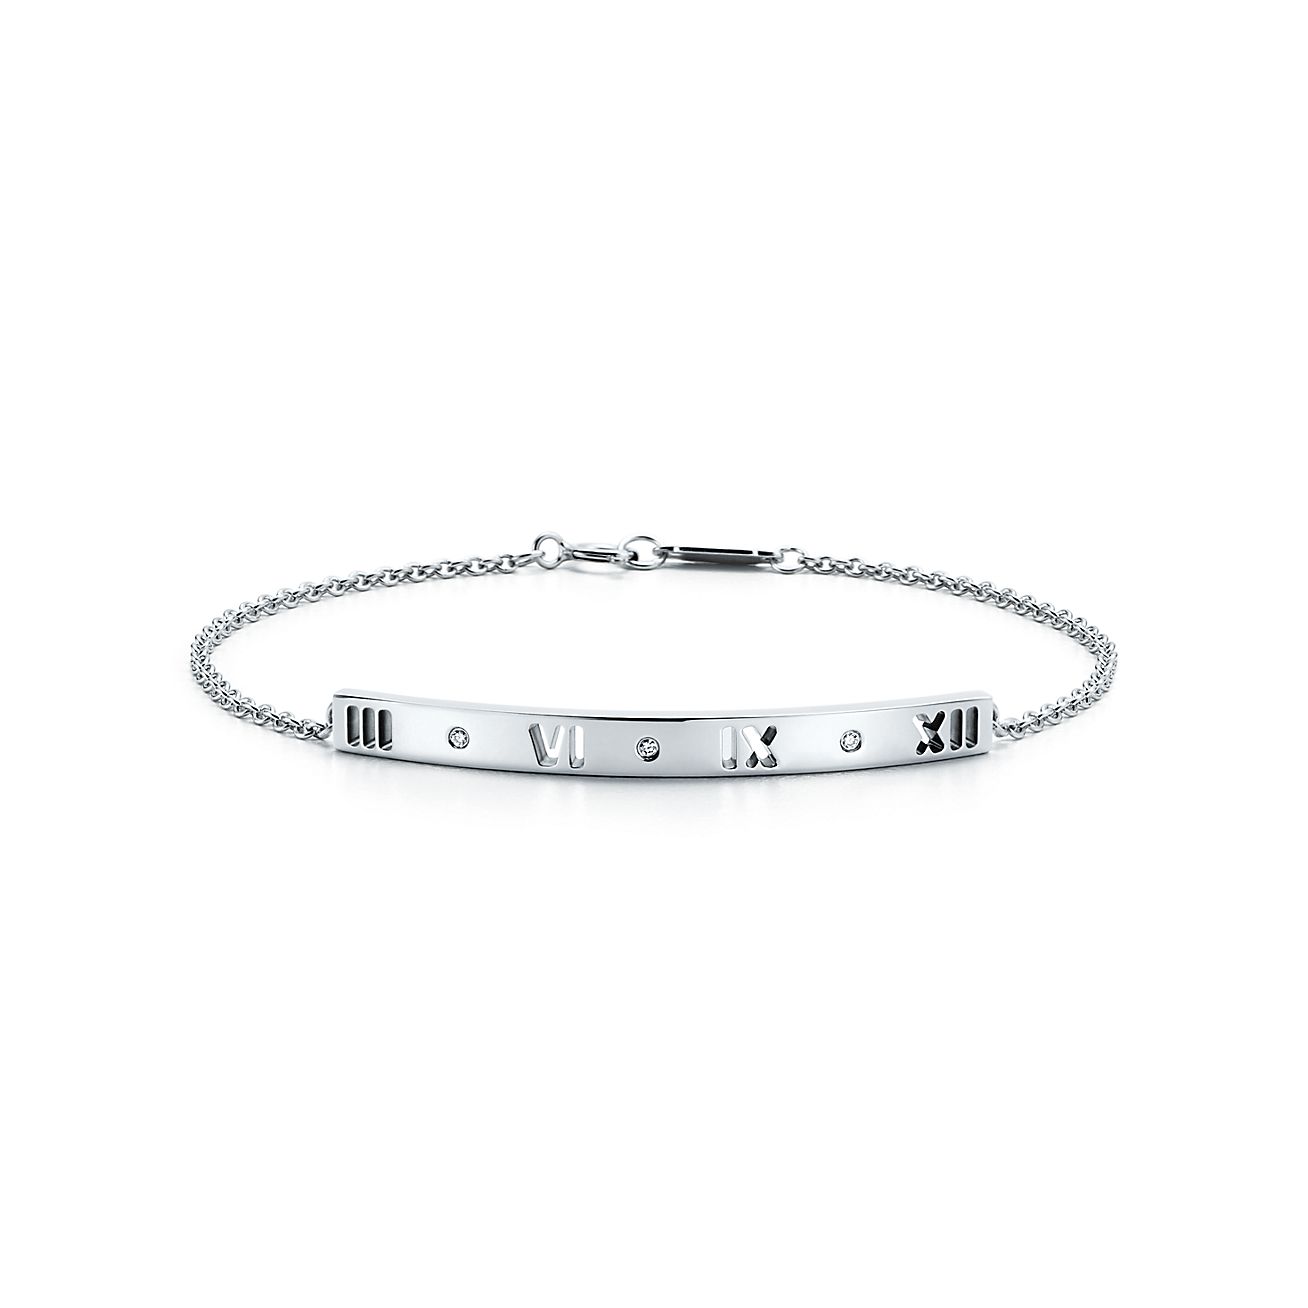 Atlas® pierced bar bracelet in 18k 